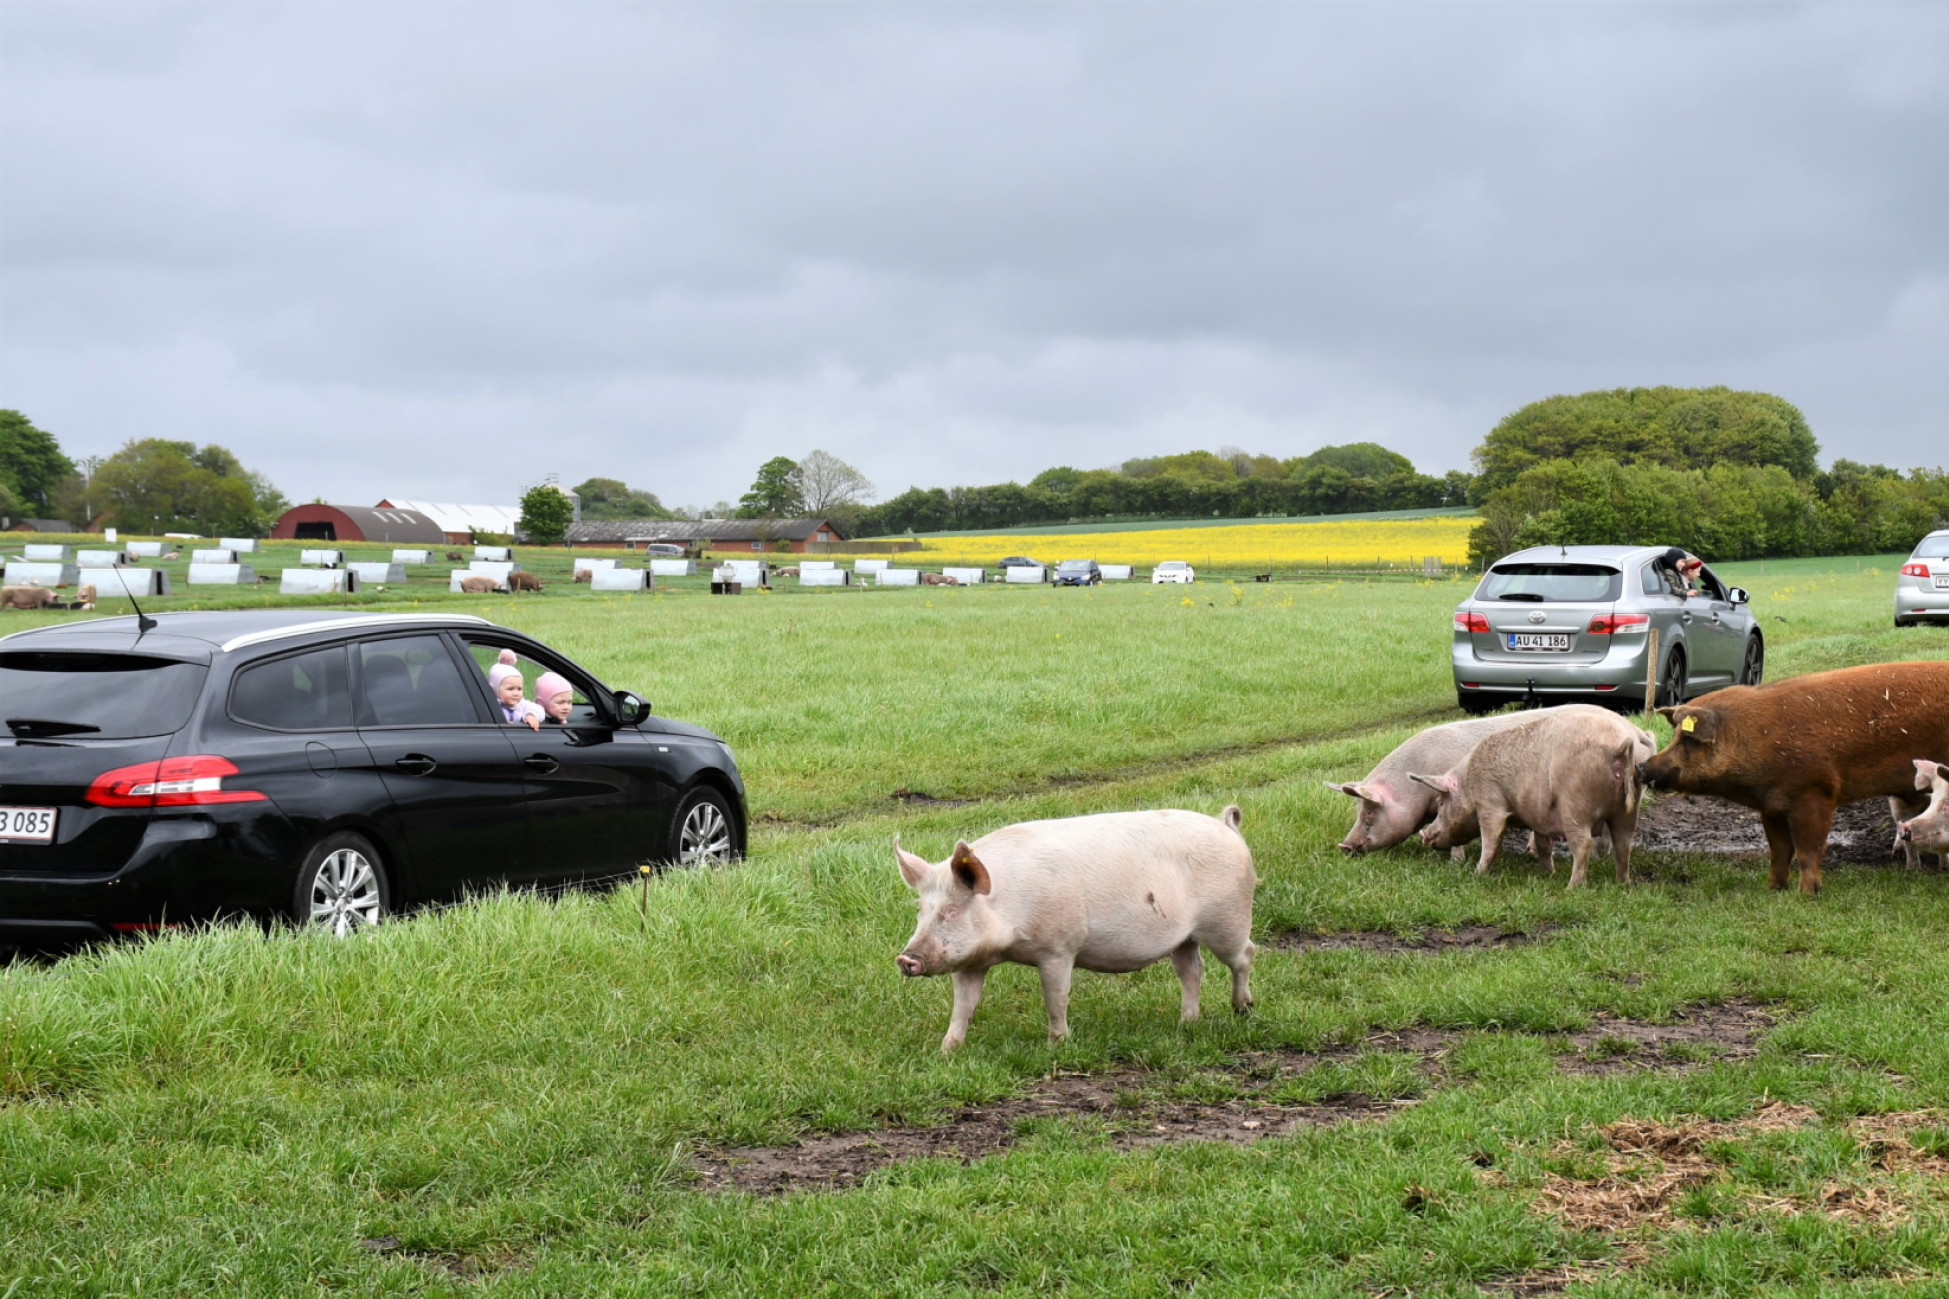 Biler kører gennem indhegning med grise